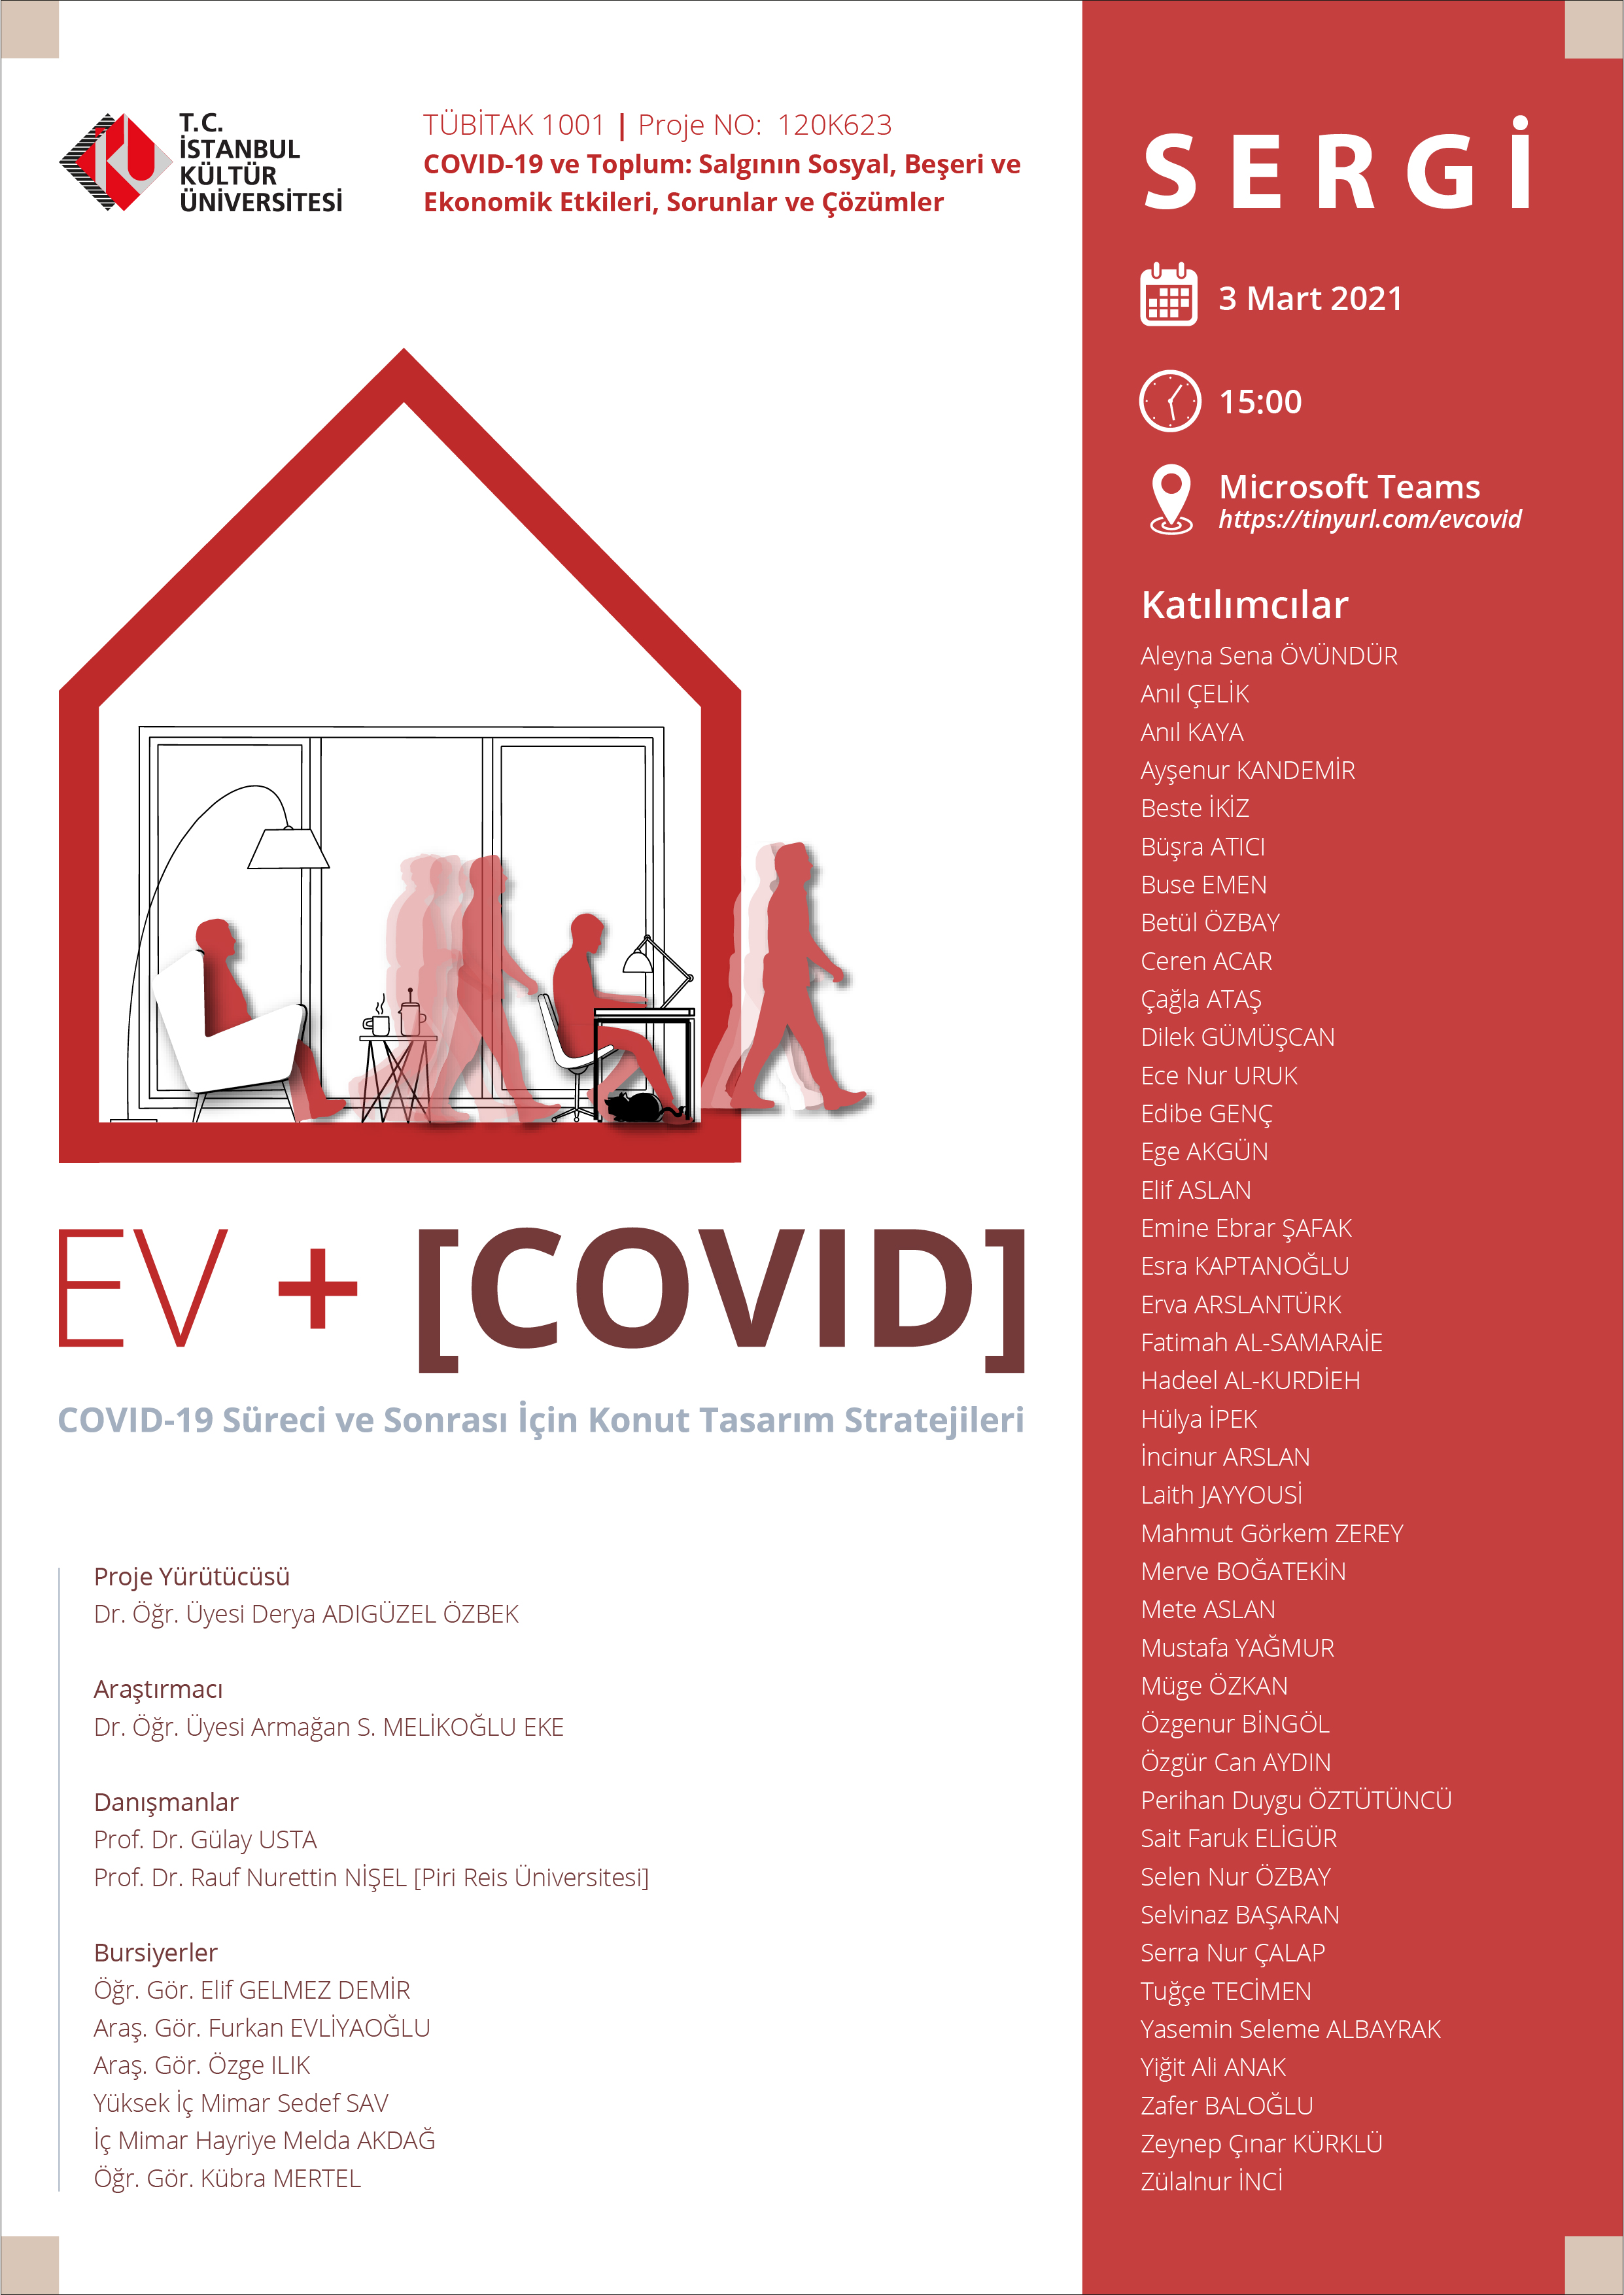 Ev + [COVID] COVID-19 Süreci ve Sonrası için Konut Tasarım Stratejileri Sergisi